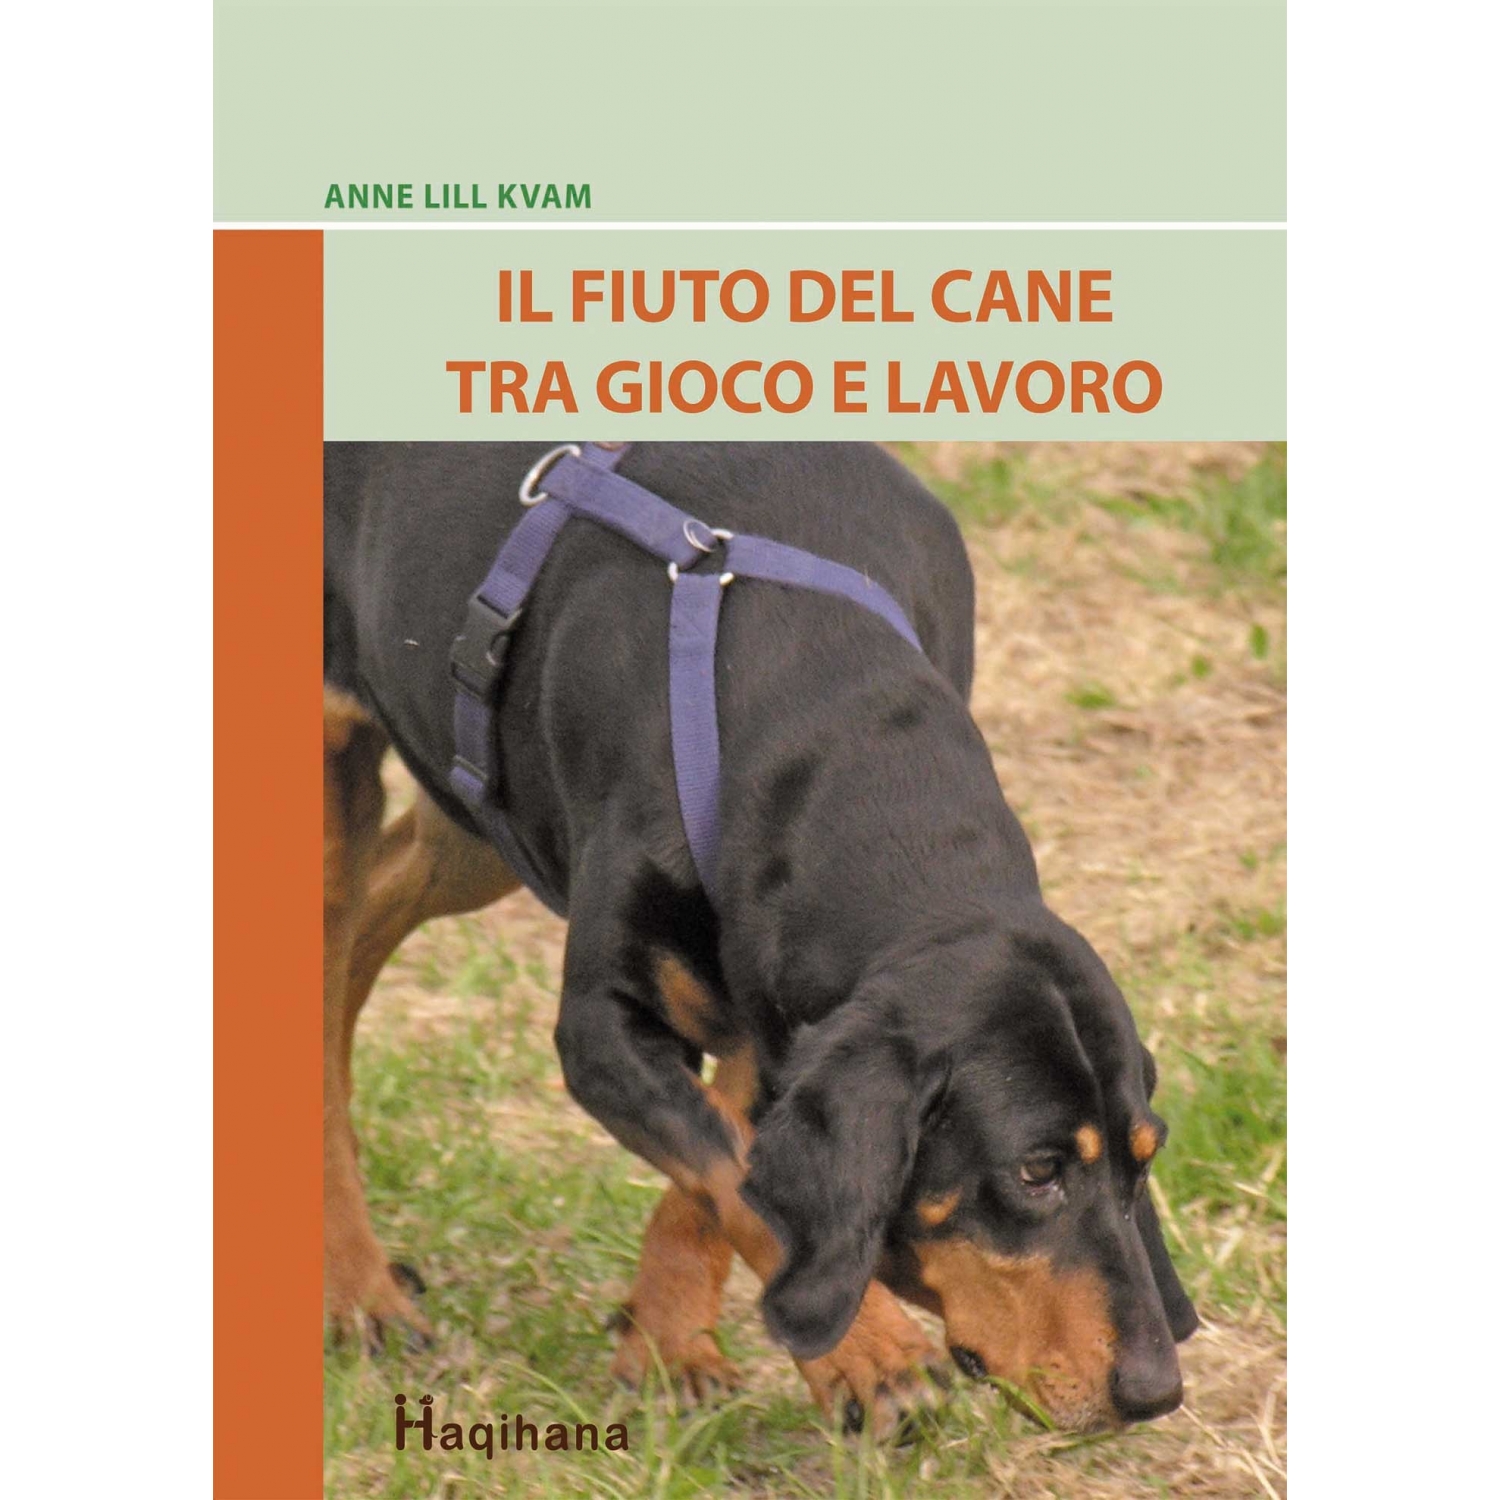 Il fiuto del cane tra gioco e lavoro (ITALIAN ONLY)